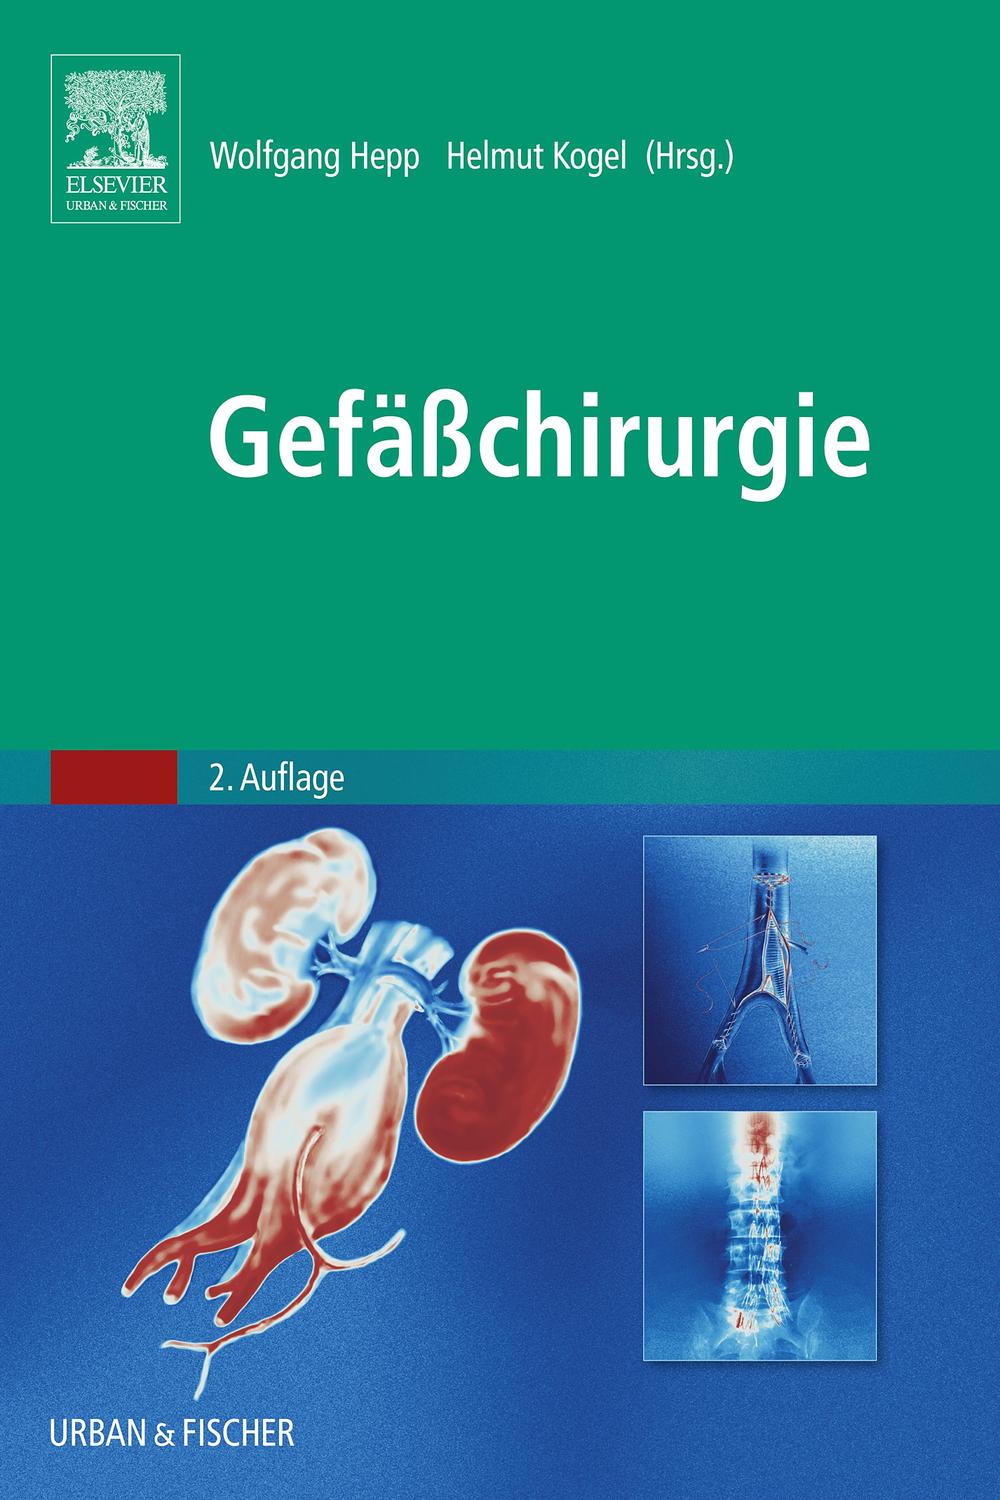 Gefäßchirurgie - Wolfgang Hepp, Helmut Kogel